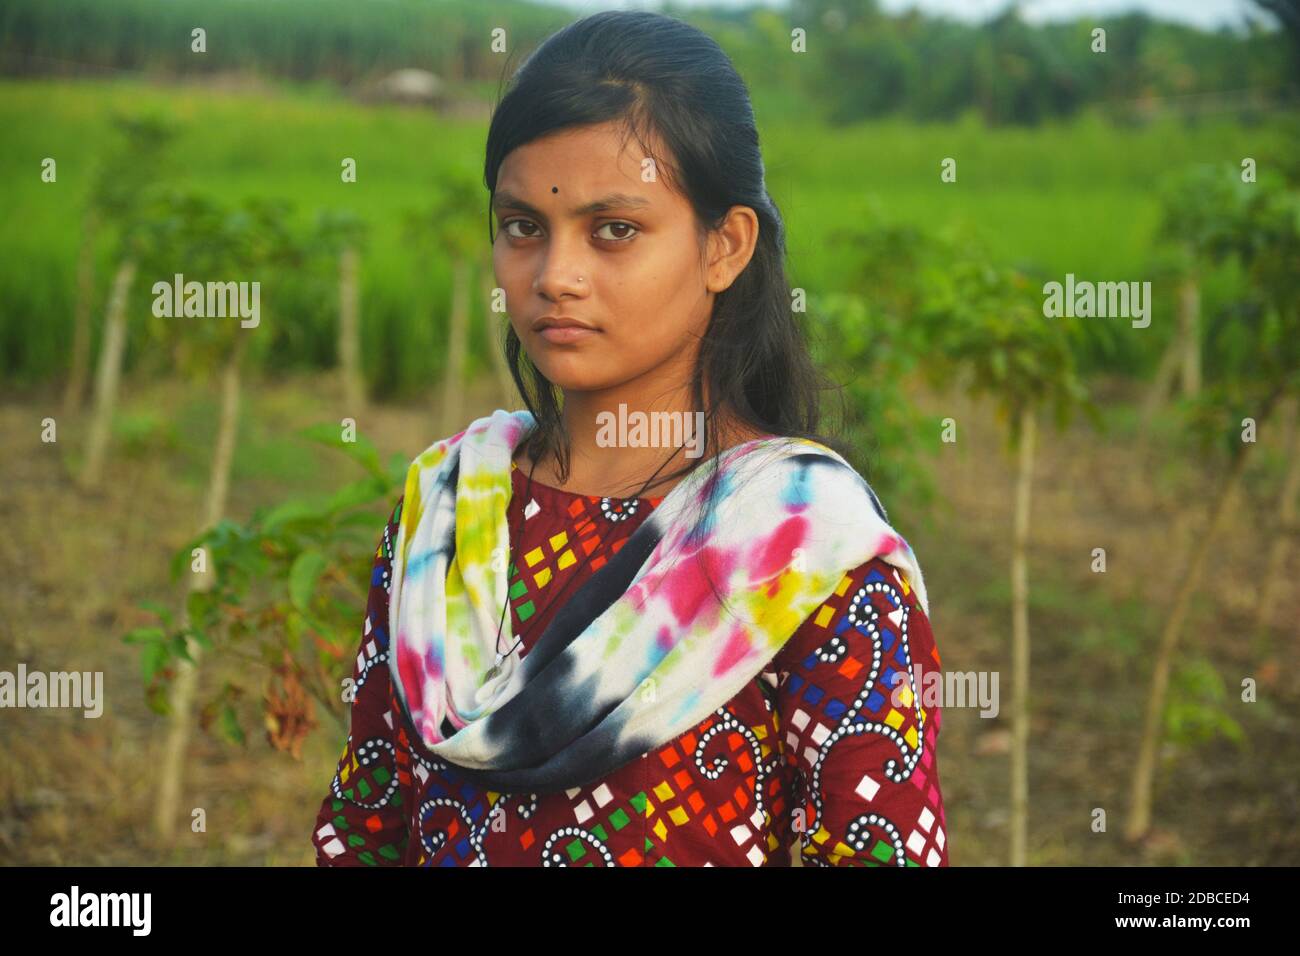 Nahaufnahme eines Teenagers in Bengali, das farbige Salwar Kameez mit langen dunklen Haaren trägt, selektive Fokussierung Stockfoto